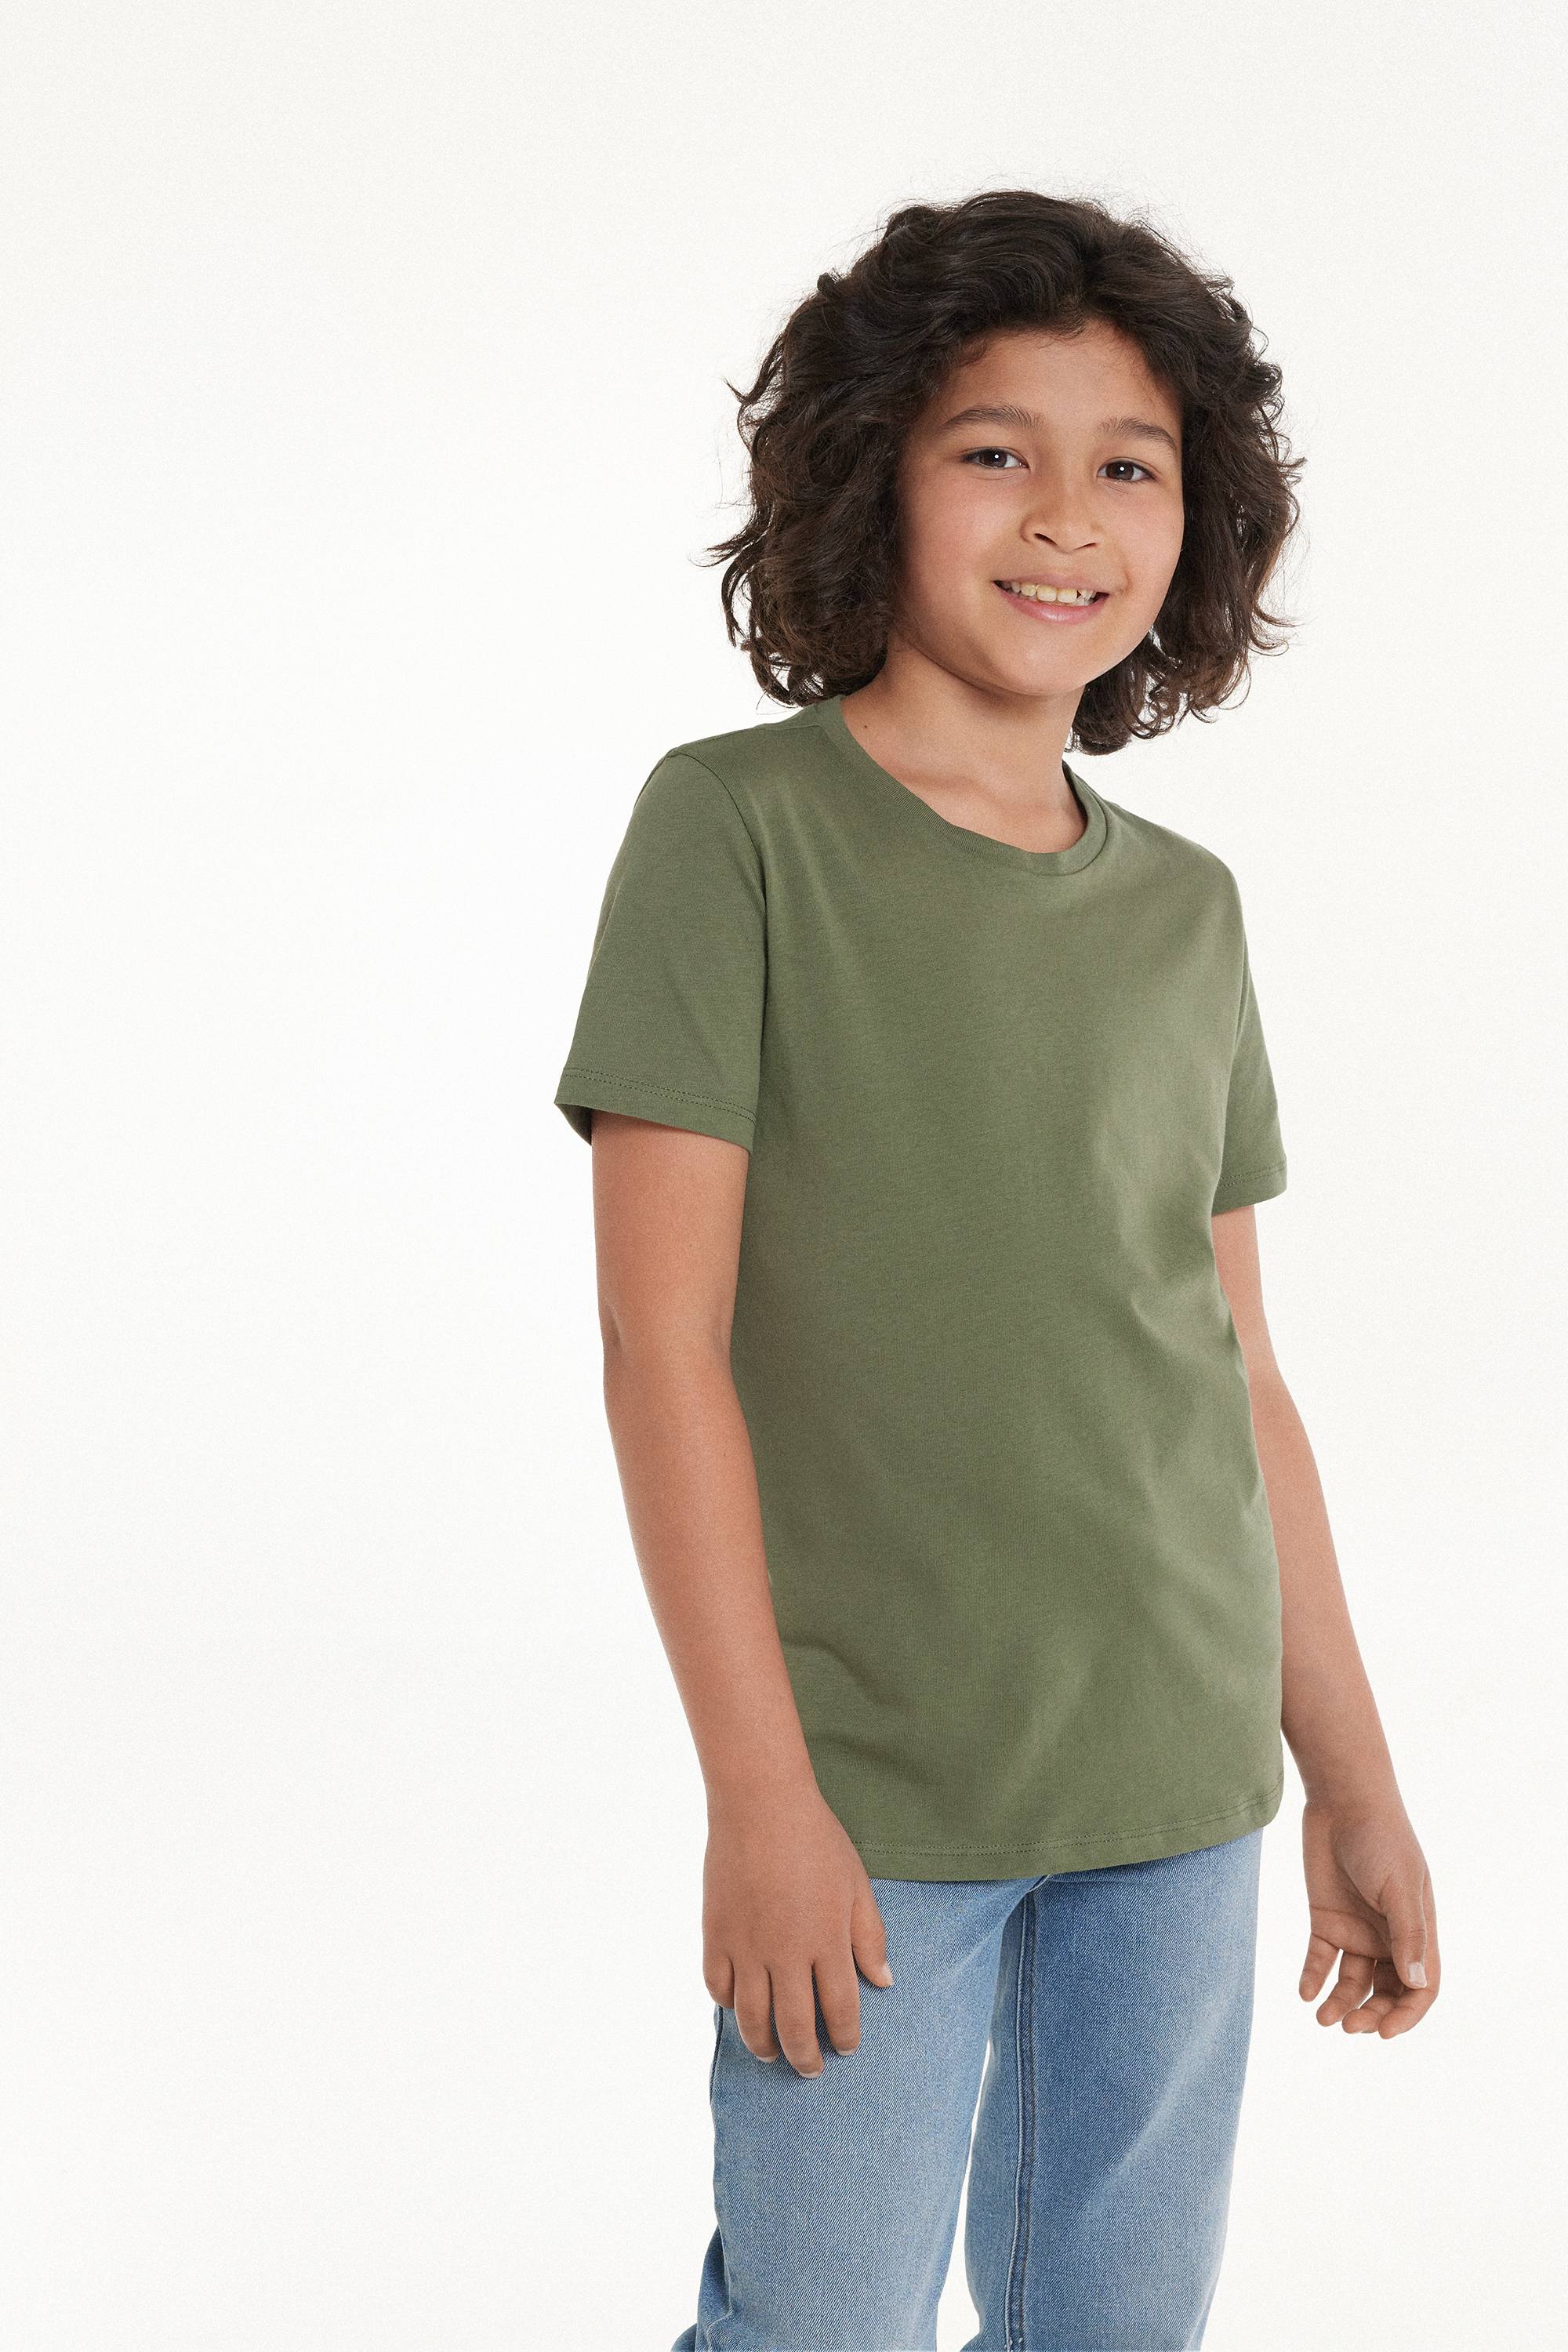 T-shirt Basique Ras-du-cou 100 % Coton Enfant Unisexe